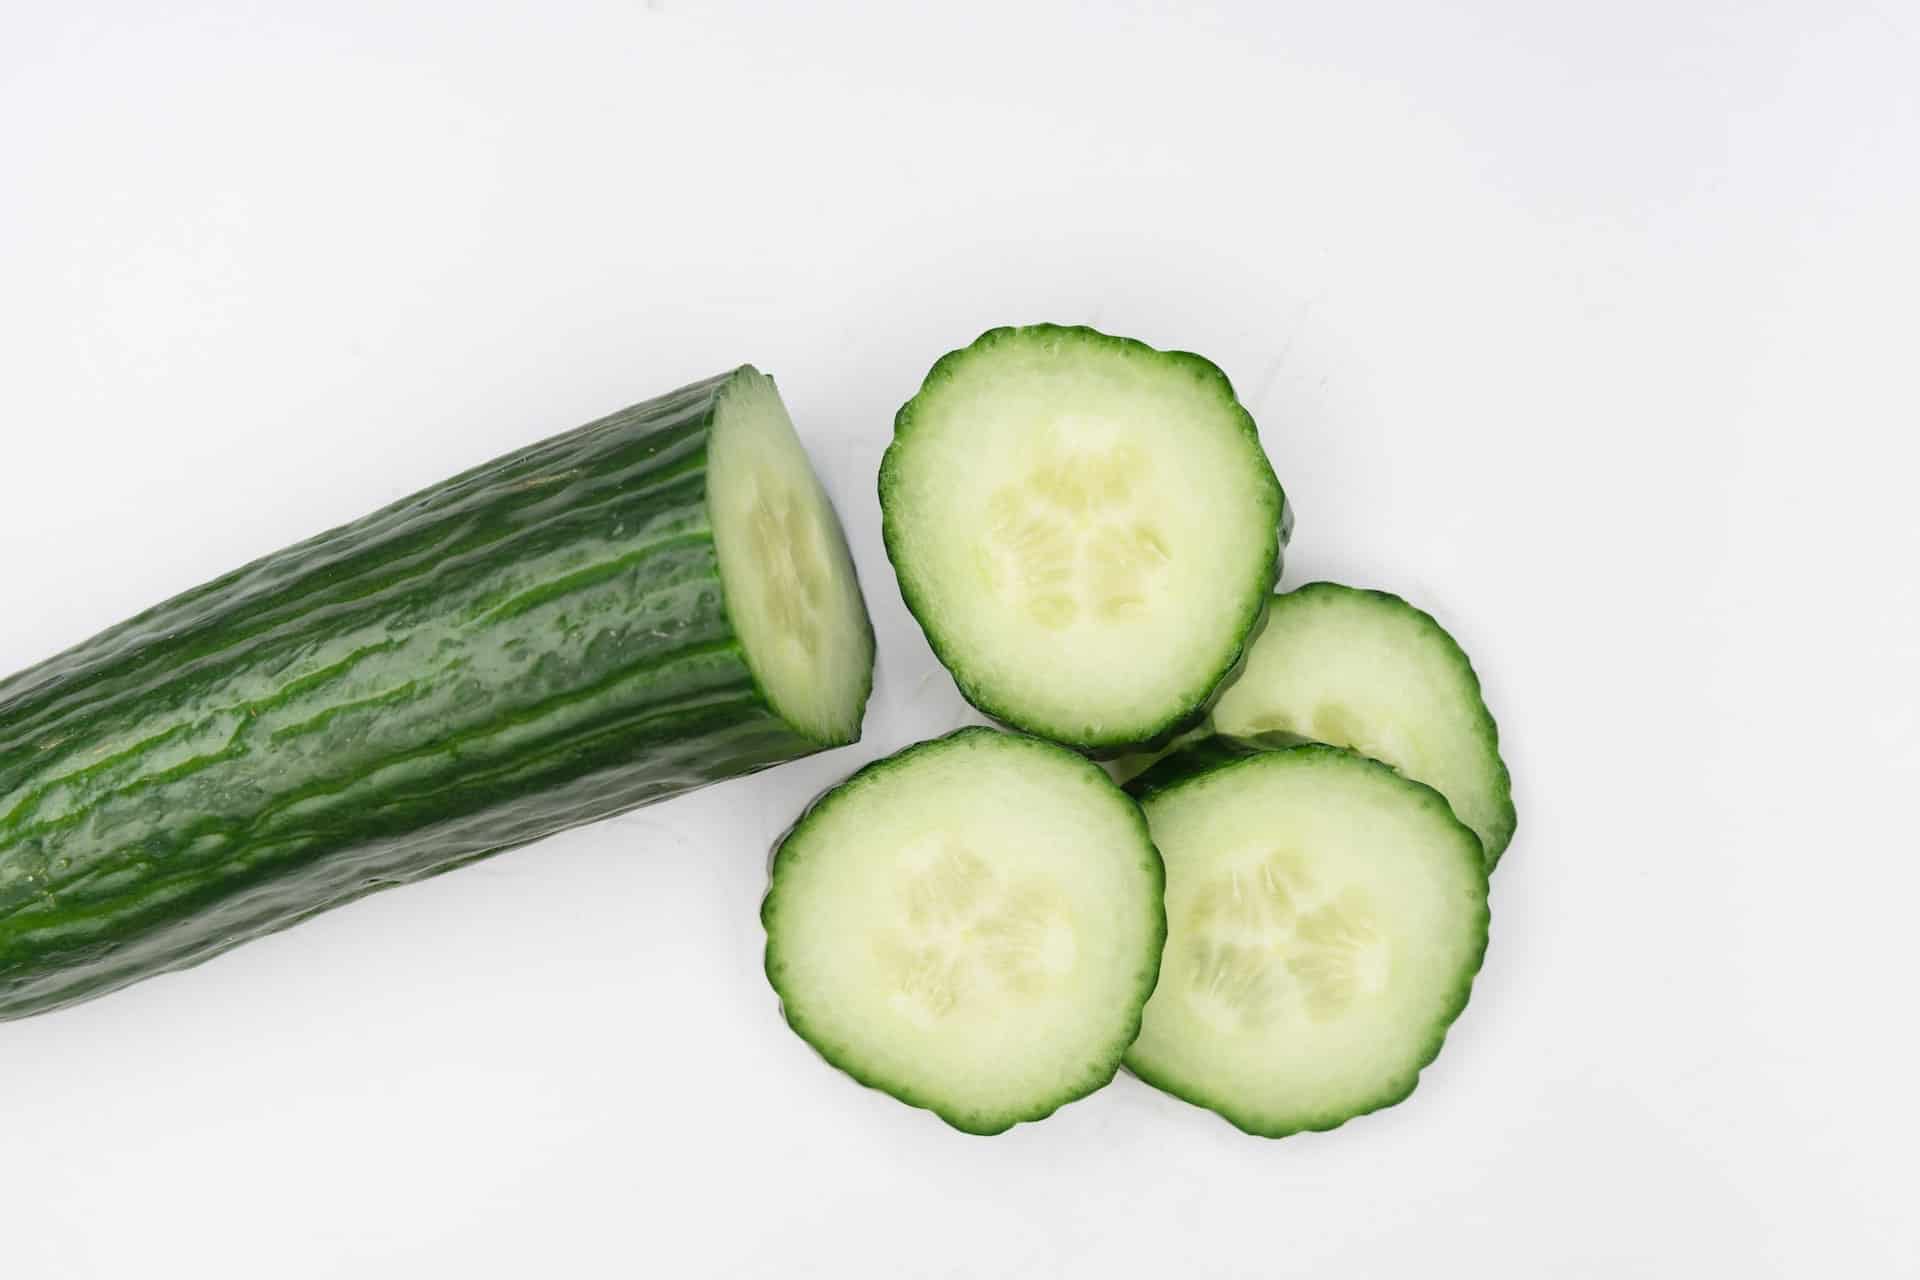 cucumbers 